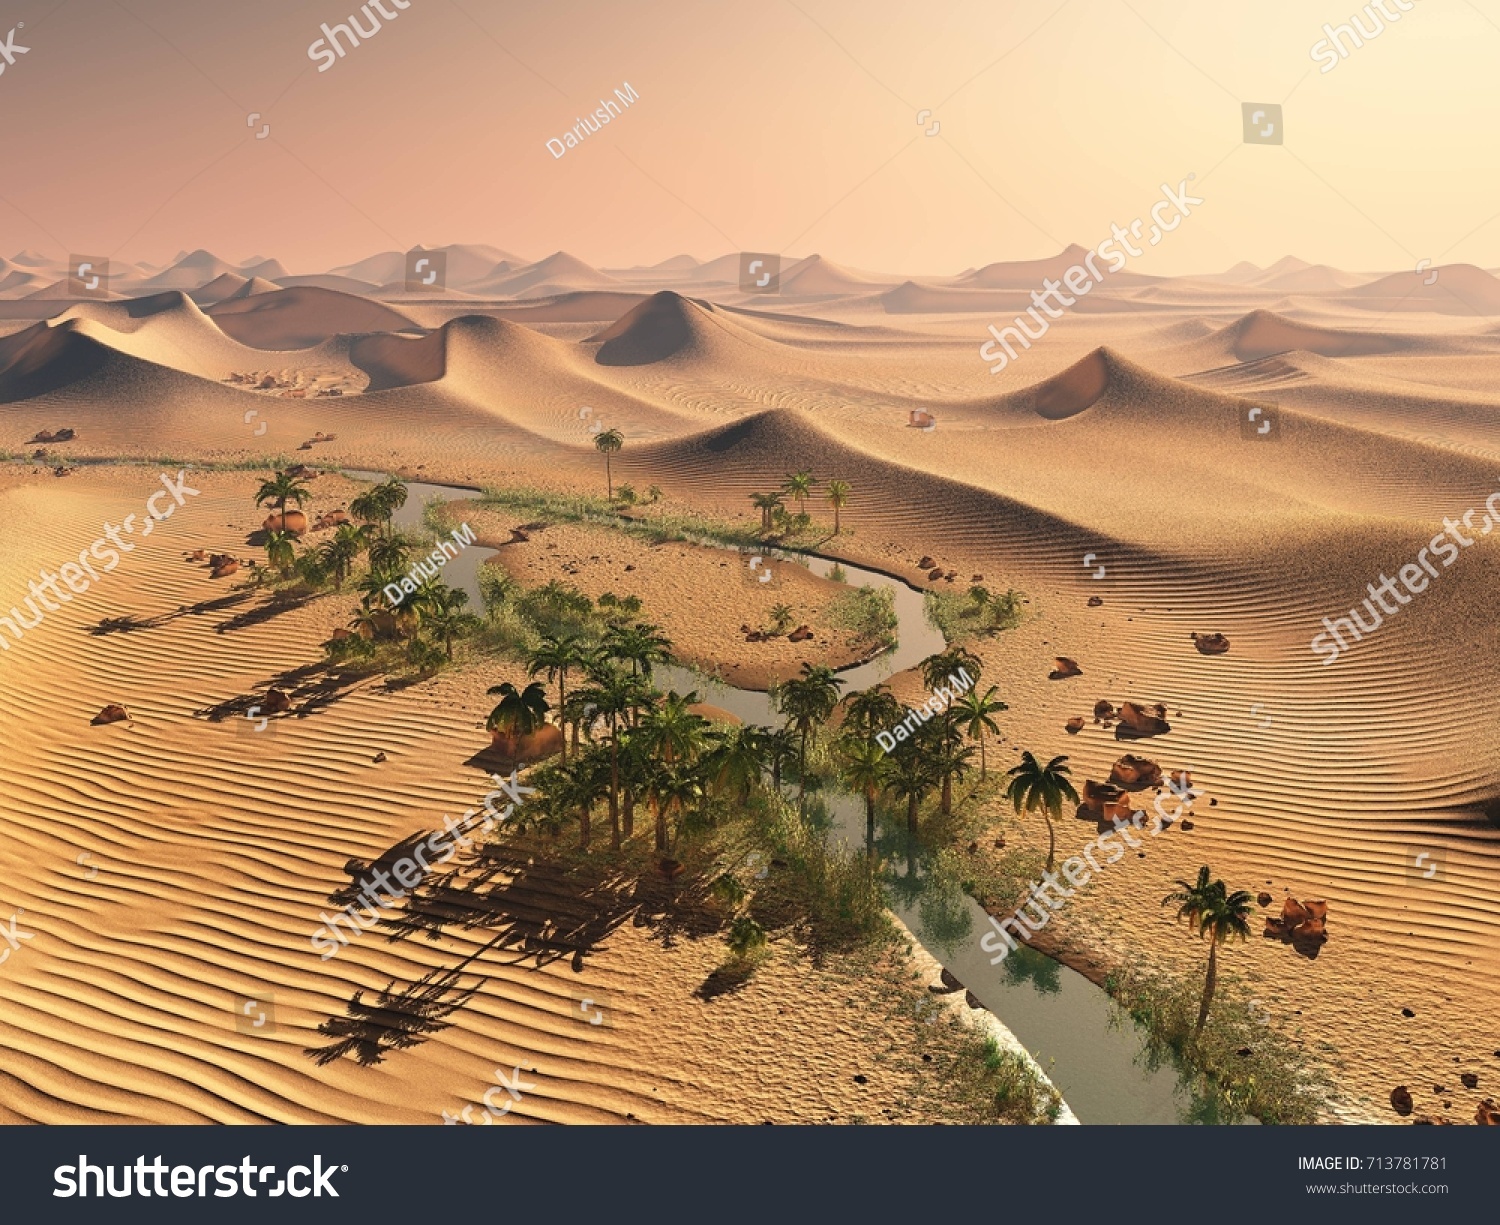 グローバルな温度変化のコンセプト 照りつける夕焼けの空の下の寂しい砂丘 干ばつ砂漠の風景3dレンダリング のイラスト素材